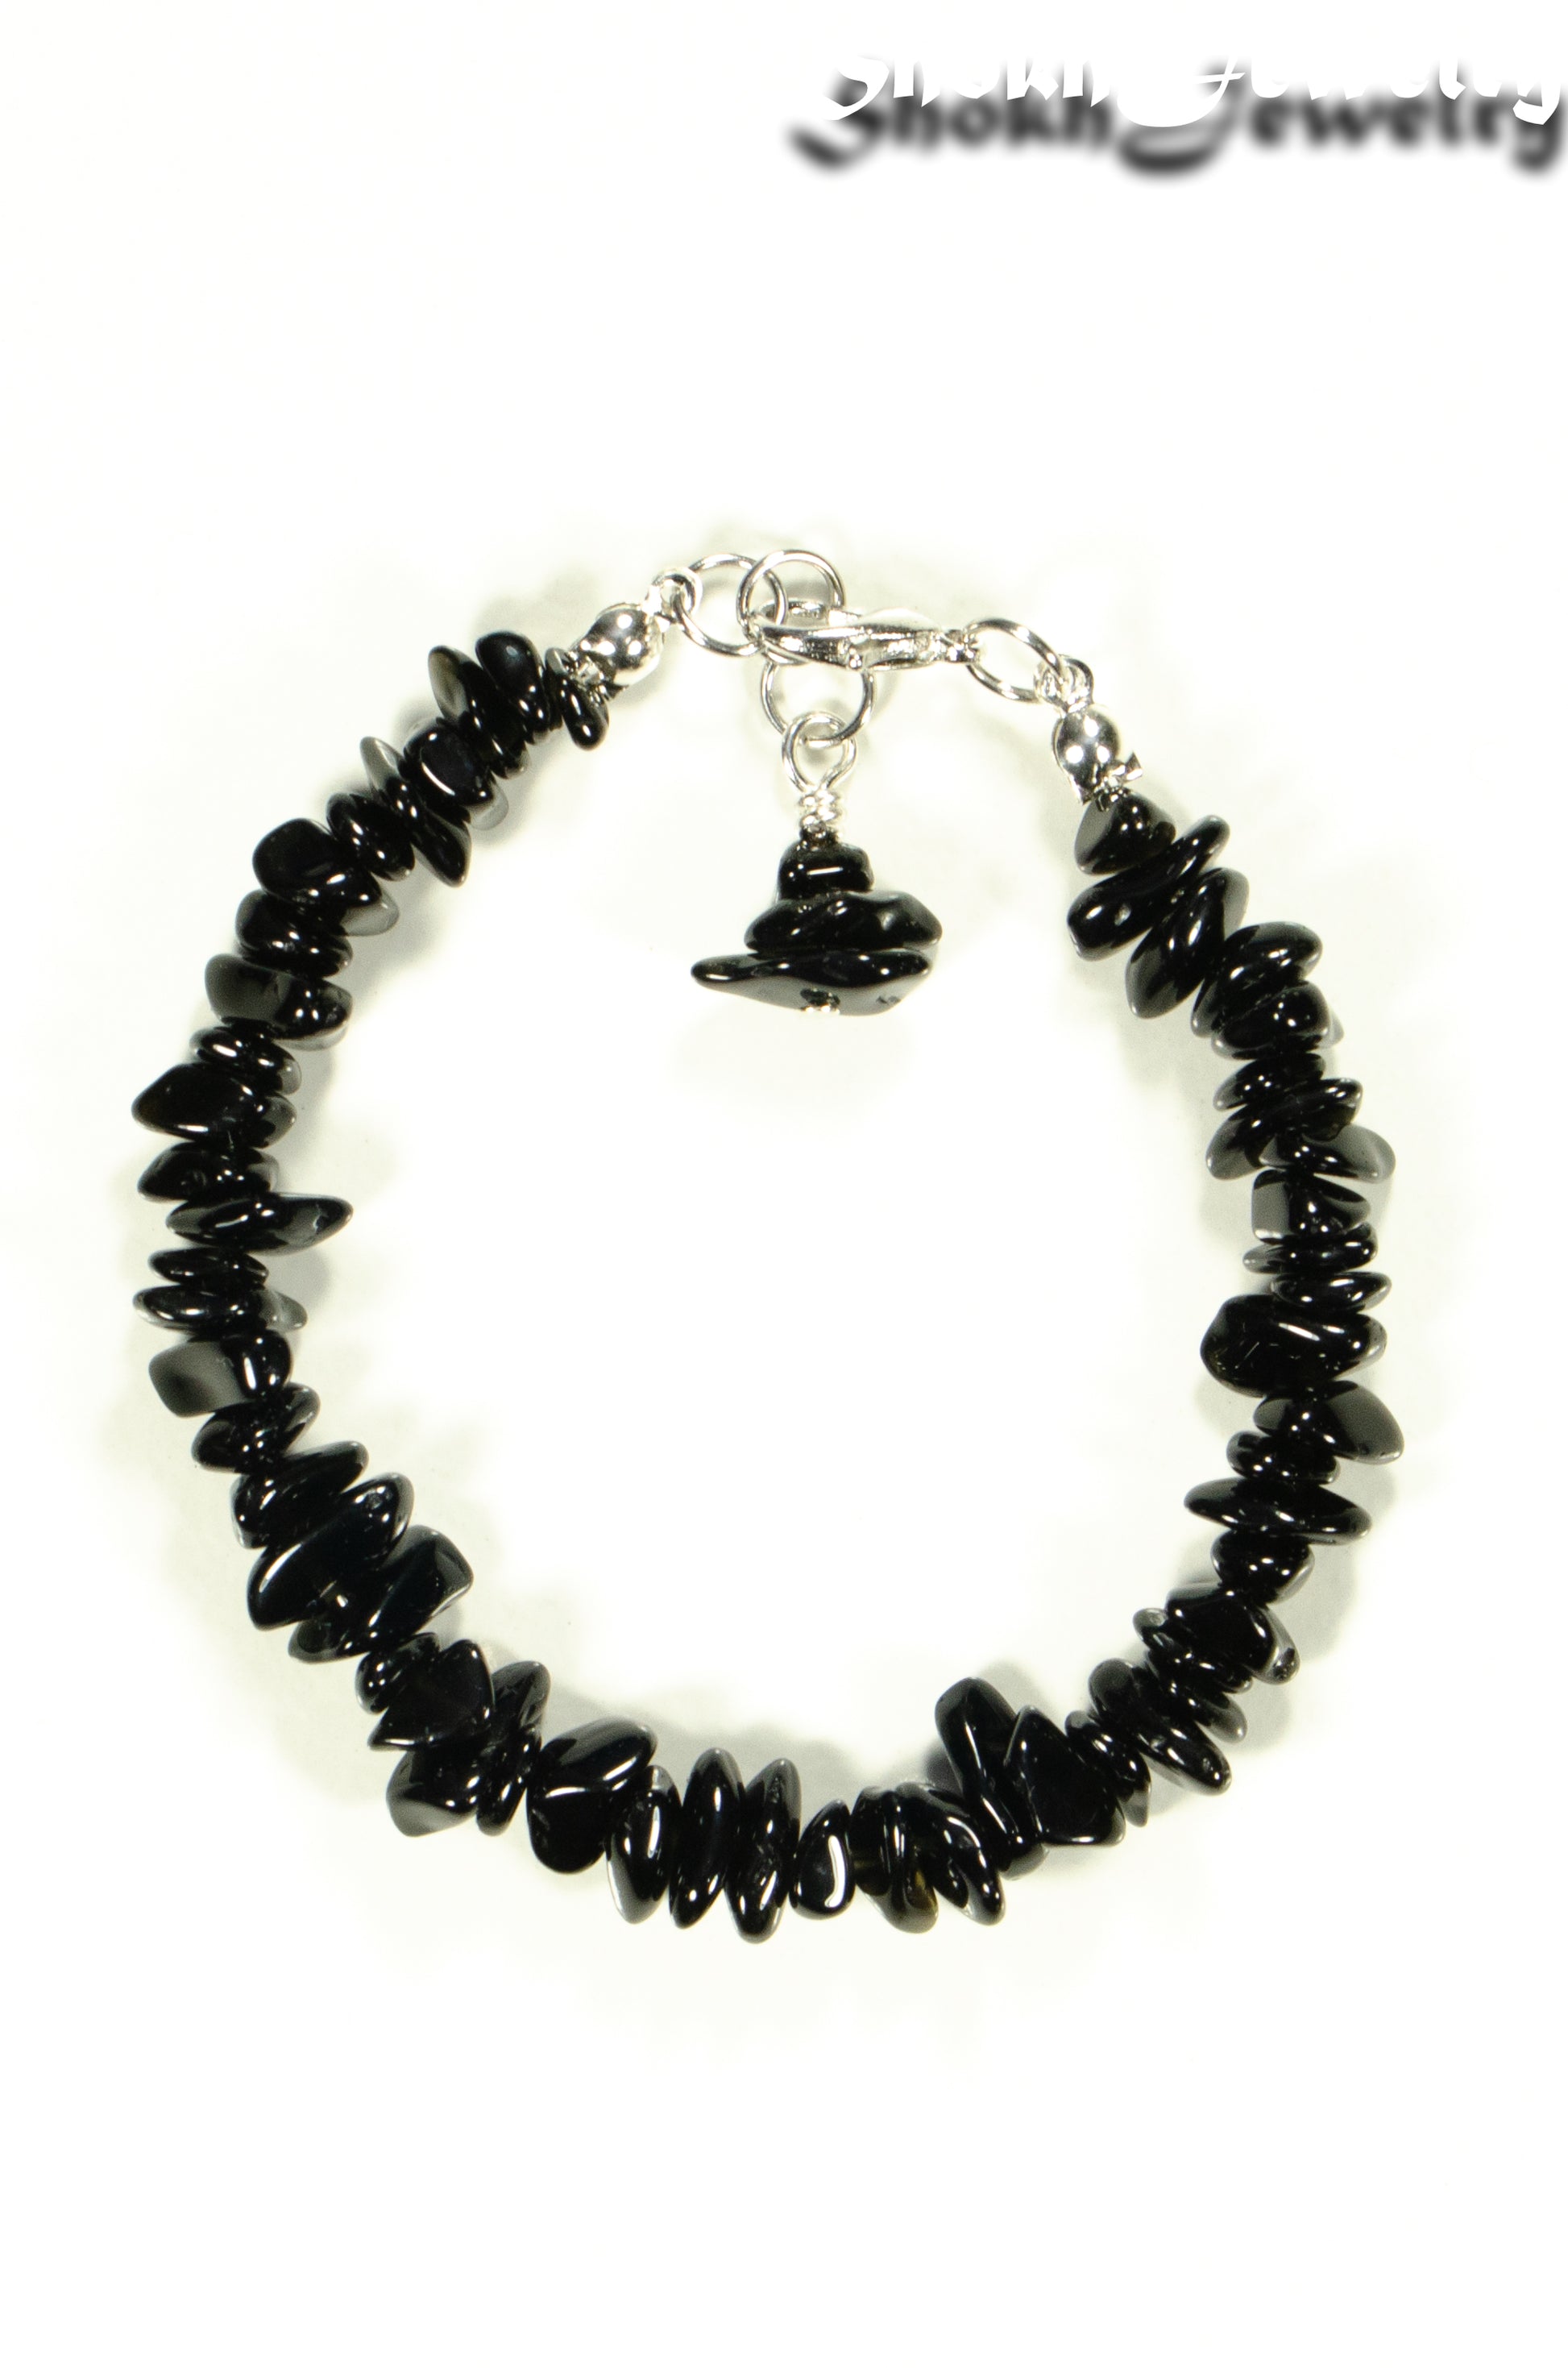 Top view of Natural Black Obsidian Crystal Chip Bracelet.